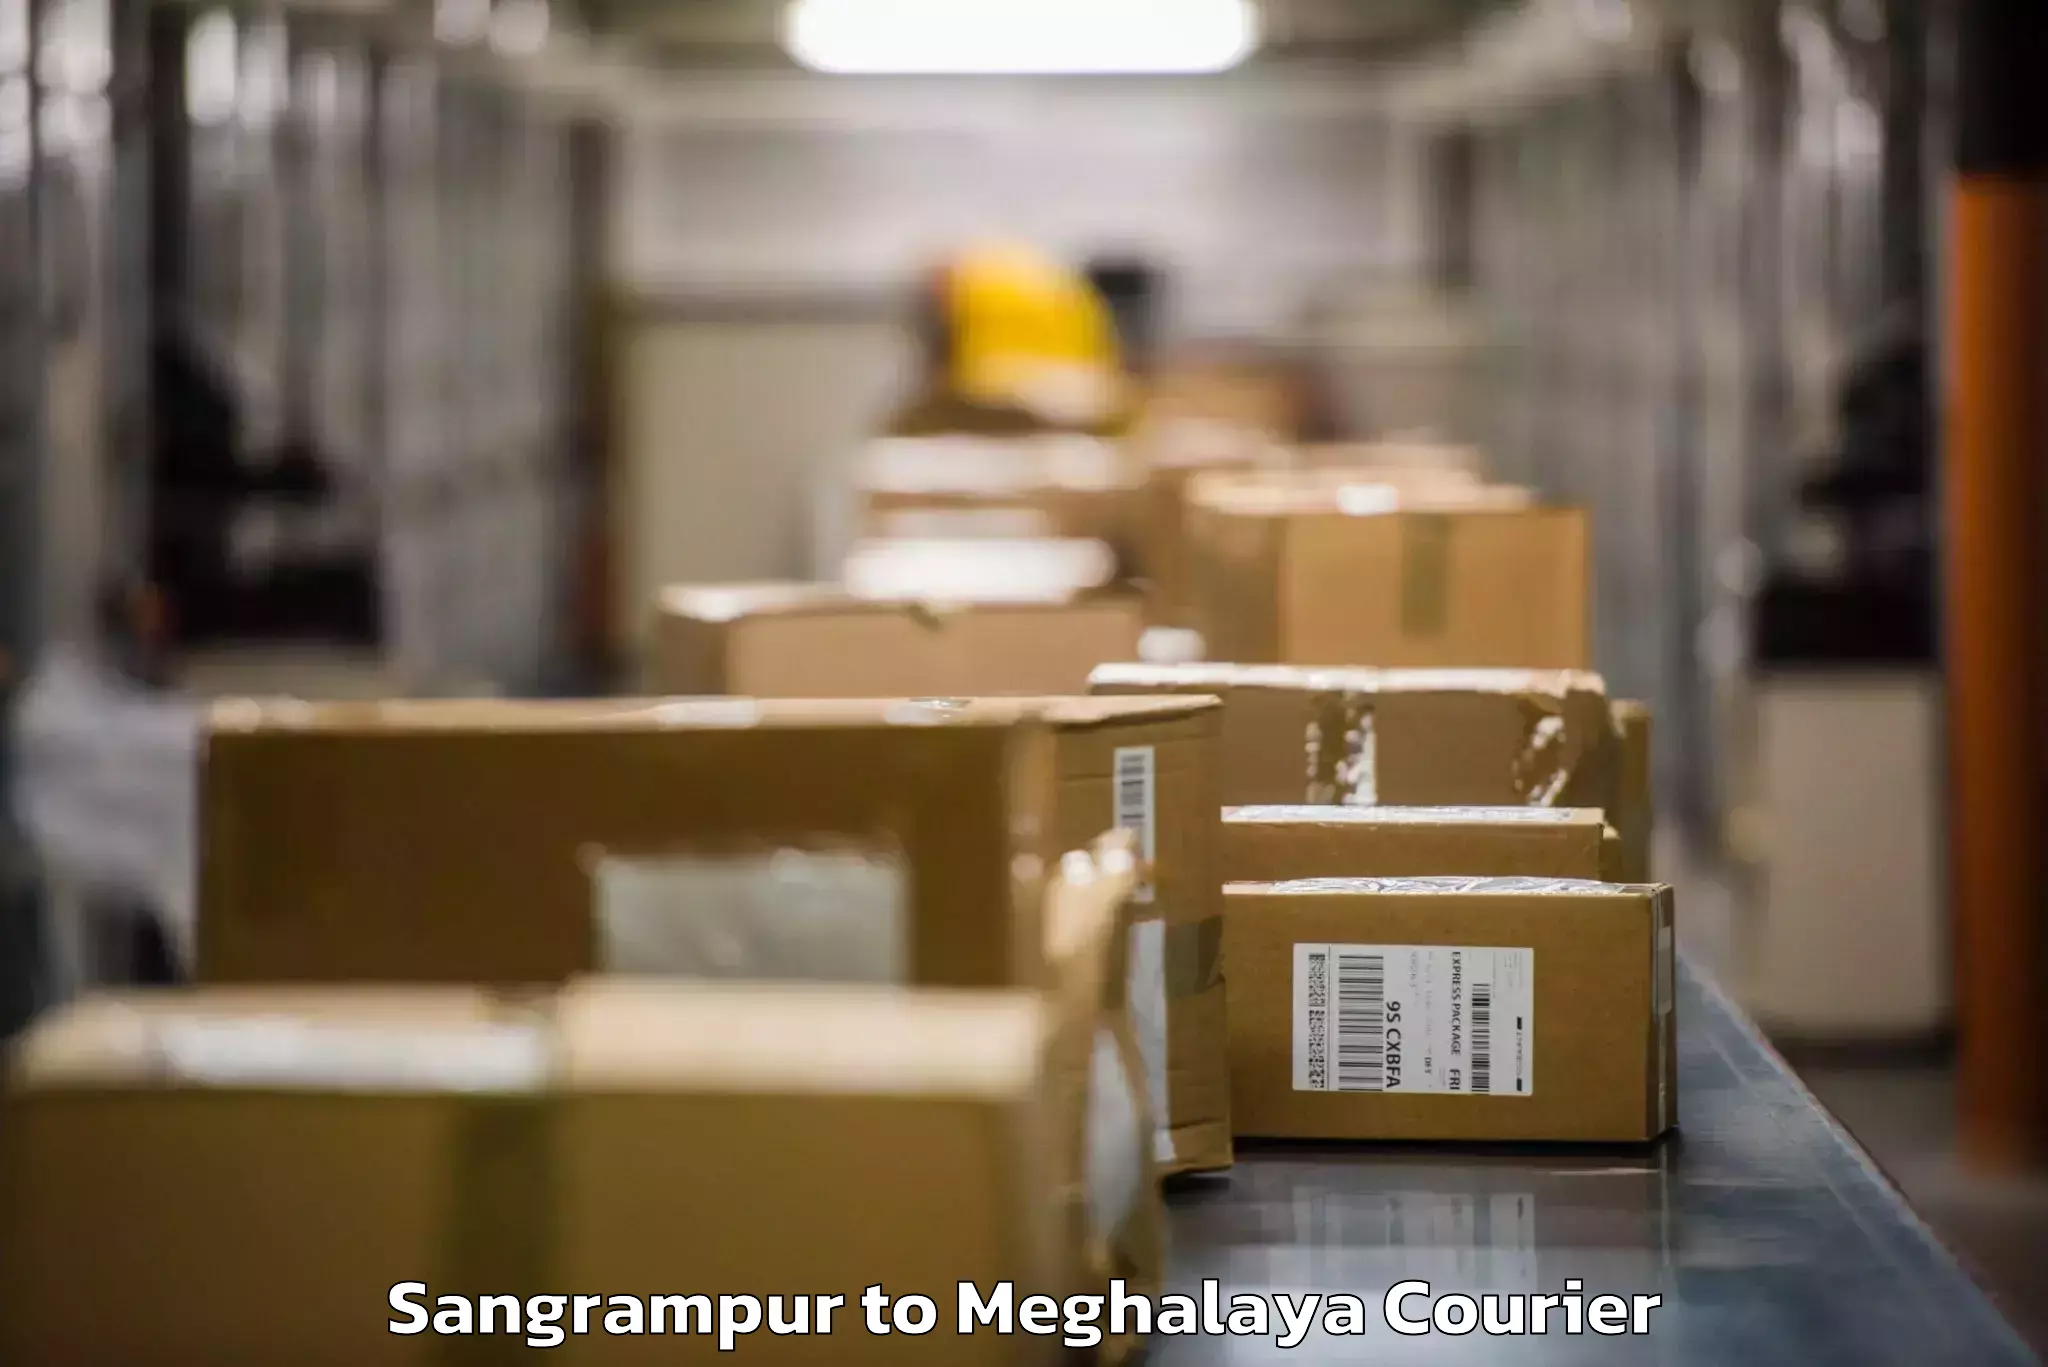 Baggage transport innovation Sangrampur to Tura